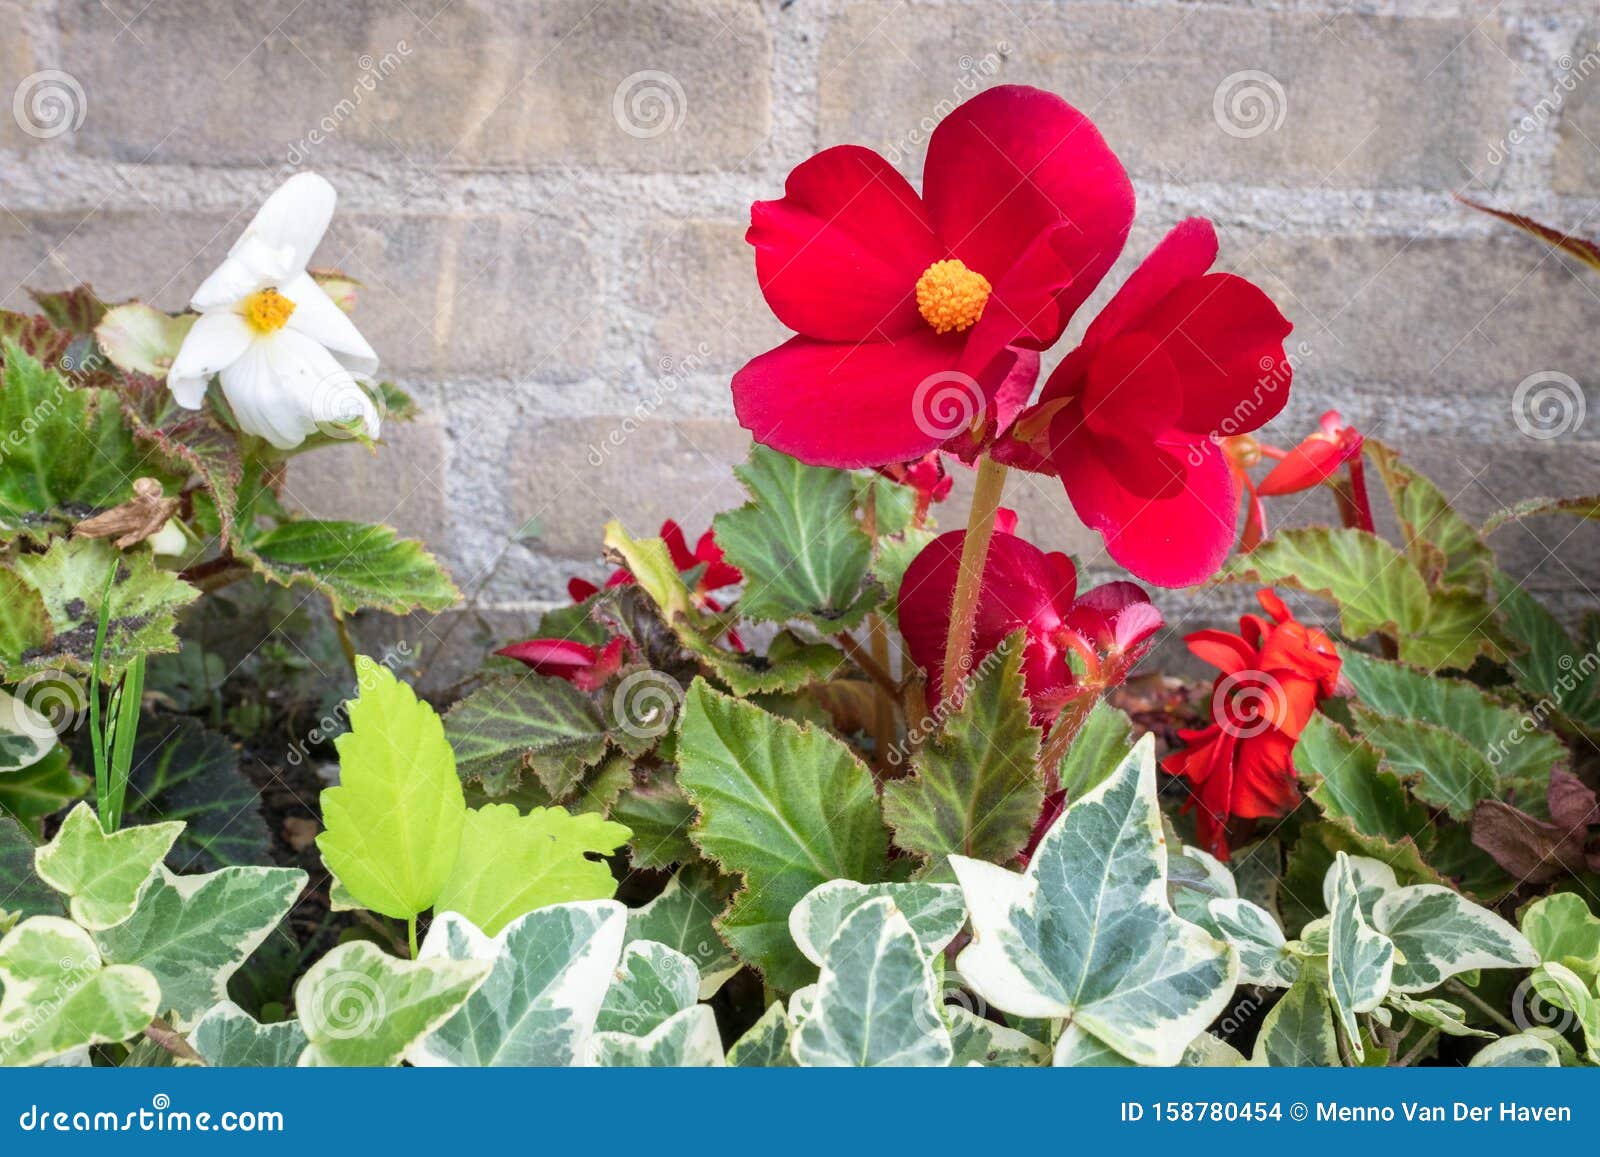 Hermosa Imagen De Begonia Tuberosa De Flores Rojas En Un Lecho De Flores En  Un JardÃn Urbano Foto de archivo - Imagen de colorido, exterior: 158780454